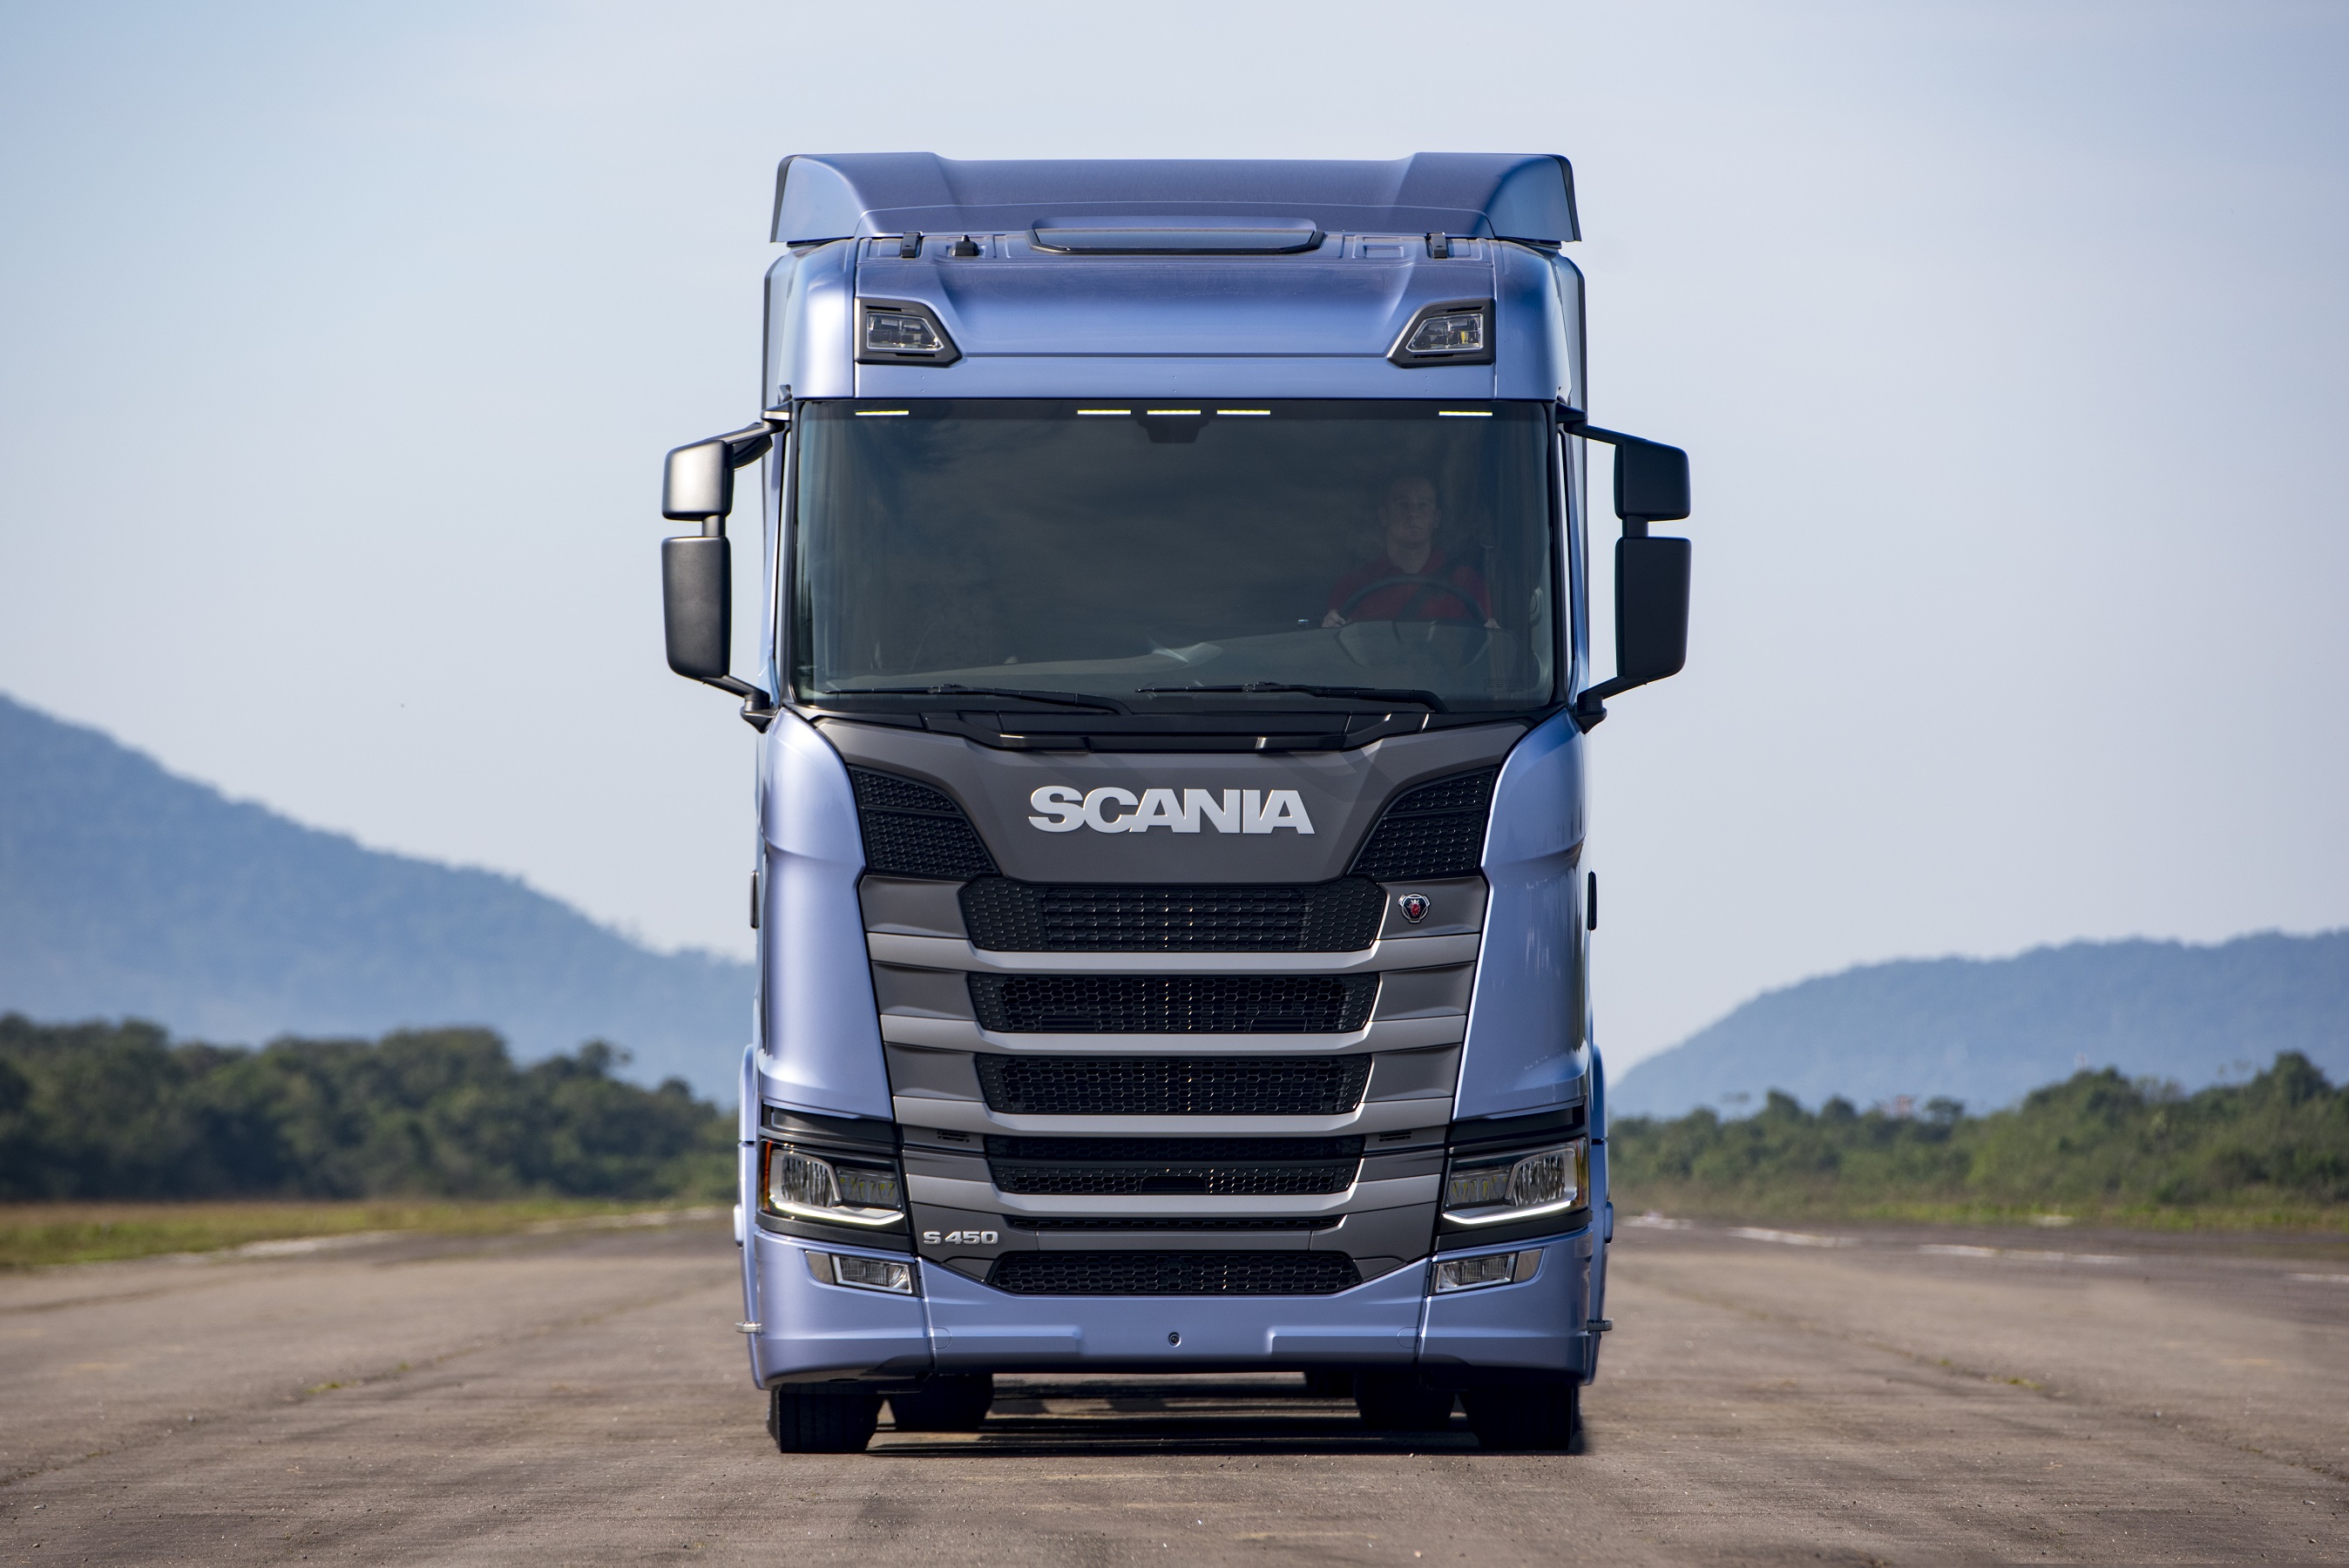 Nova Geração de Caminhões Scania será lançada em Londrina